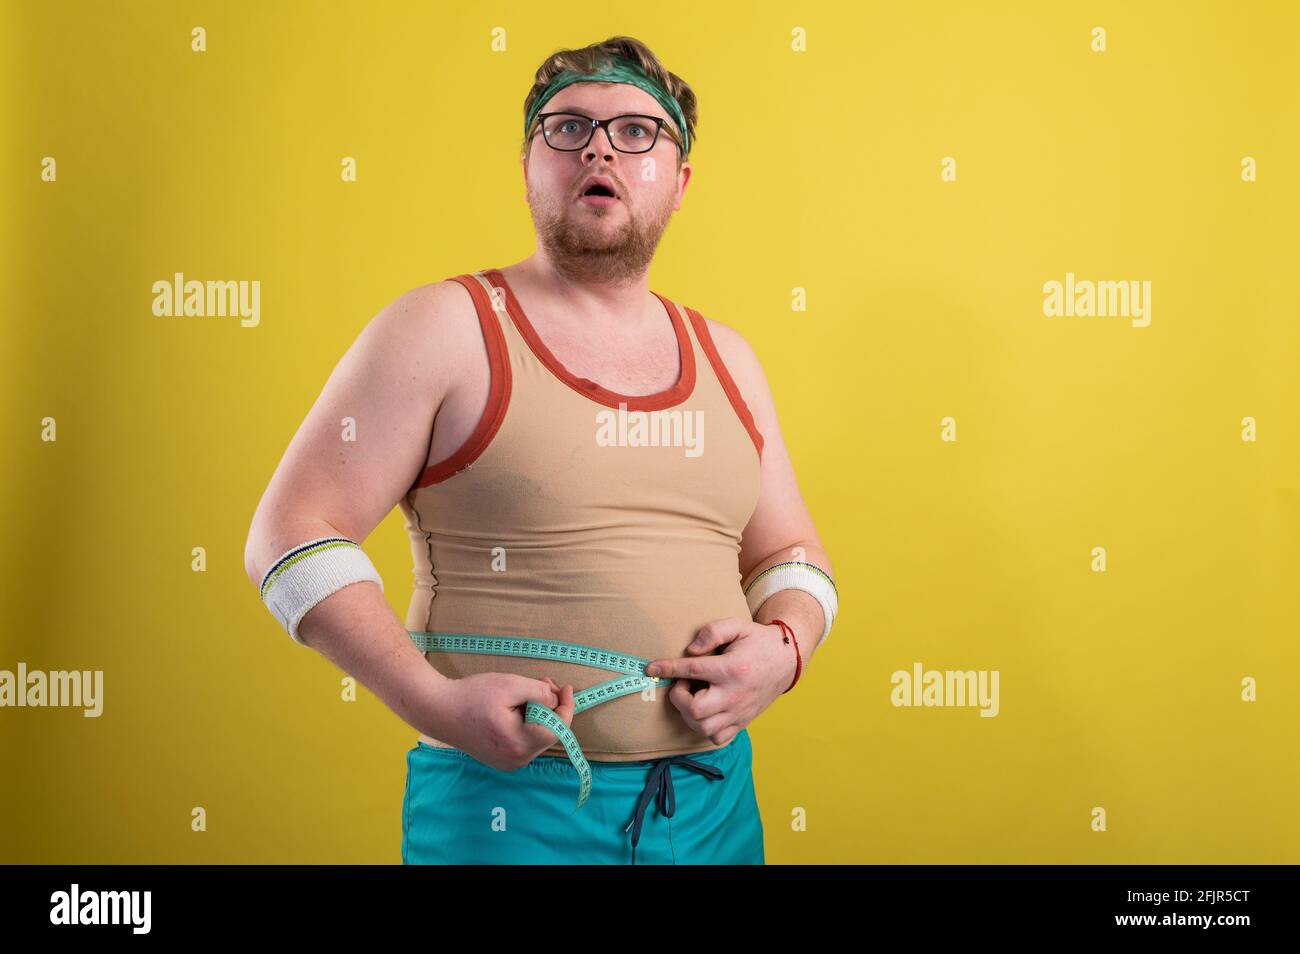 Ein Mann in Sportbekleidung misst sein Körpervolumen. Gesundes Lifestyle-Konzept, gesunde Ernährung Stockfoto